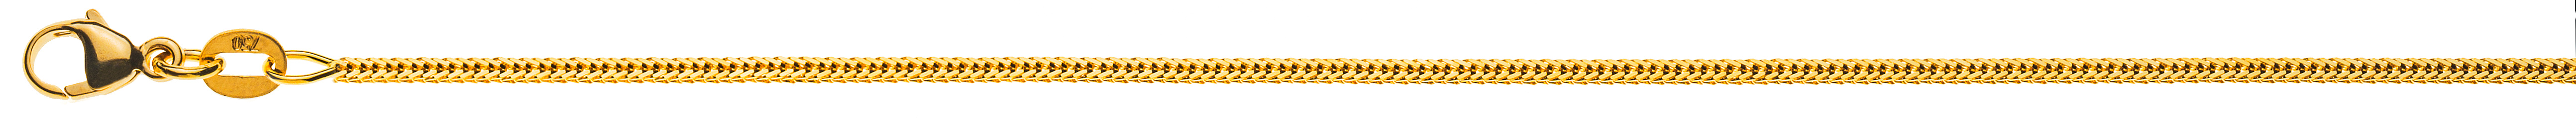 AURONOS Prestige Collier en or jaune 18K queue de renard diamantée 38cm 1.2mm